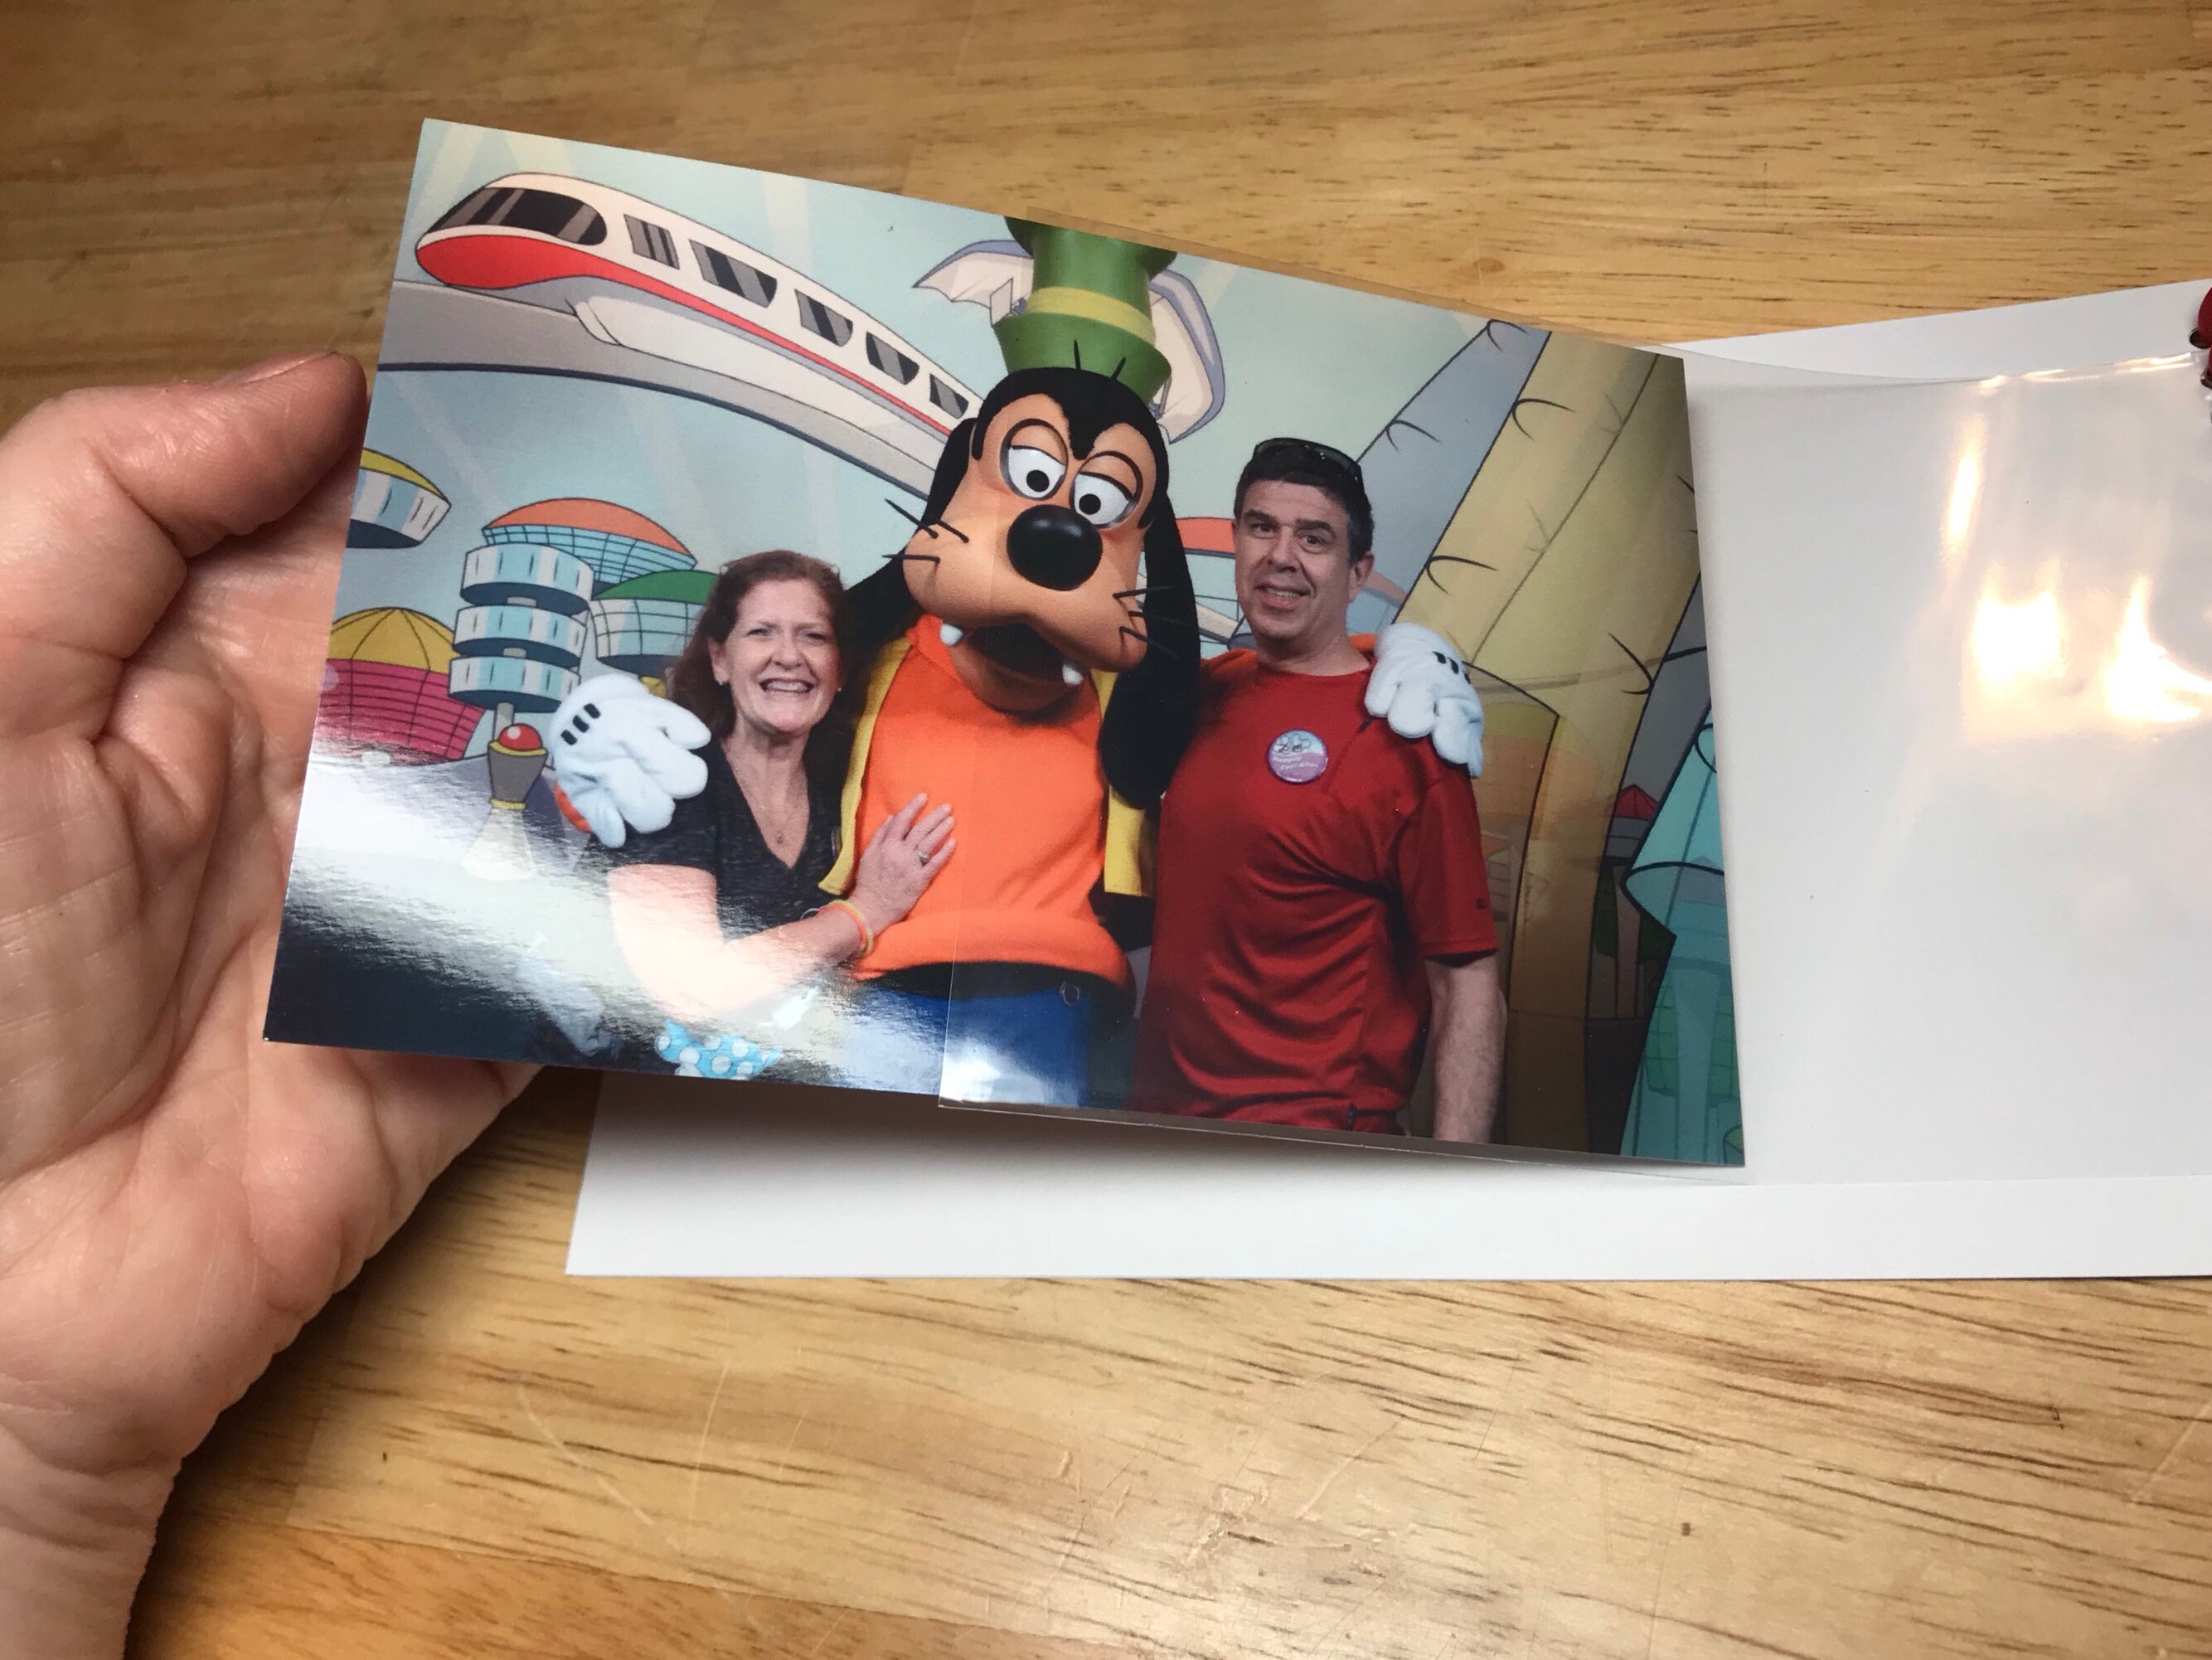 Disney Autograph Book Scrapbook rojo Mickey Mouse personalizado Vacation  Photo Book dec -  México